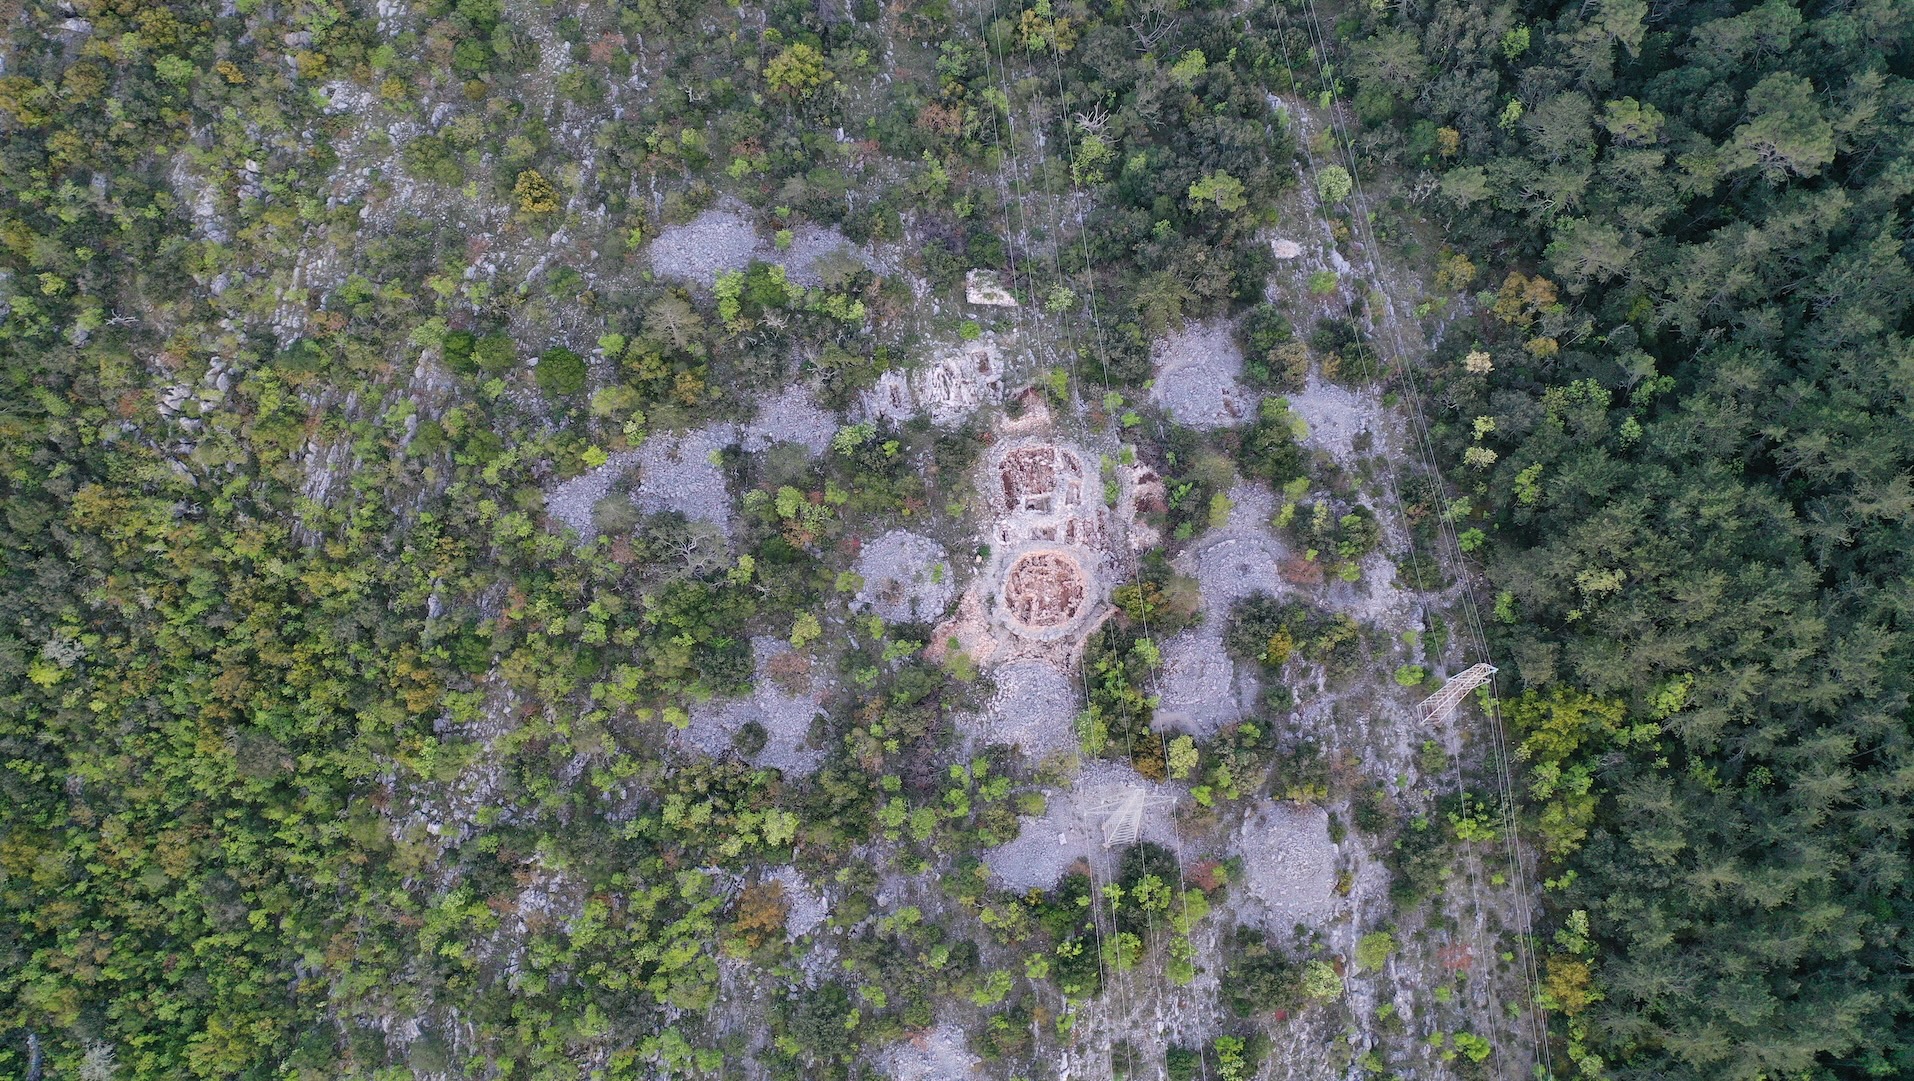 Vue aérienne d'une haute nécropole en Croatie.  Nous voyons beaucoup d'arbres et quelques parcelles de roches dénudées.